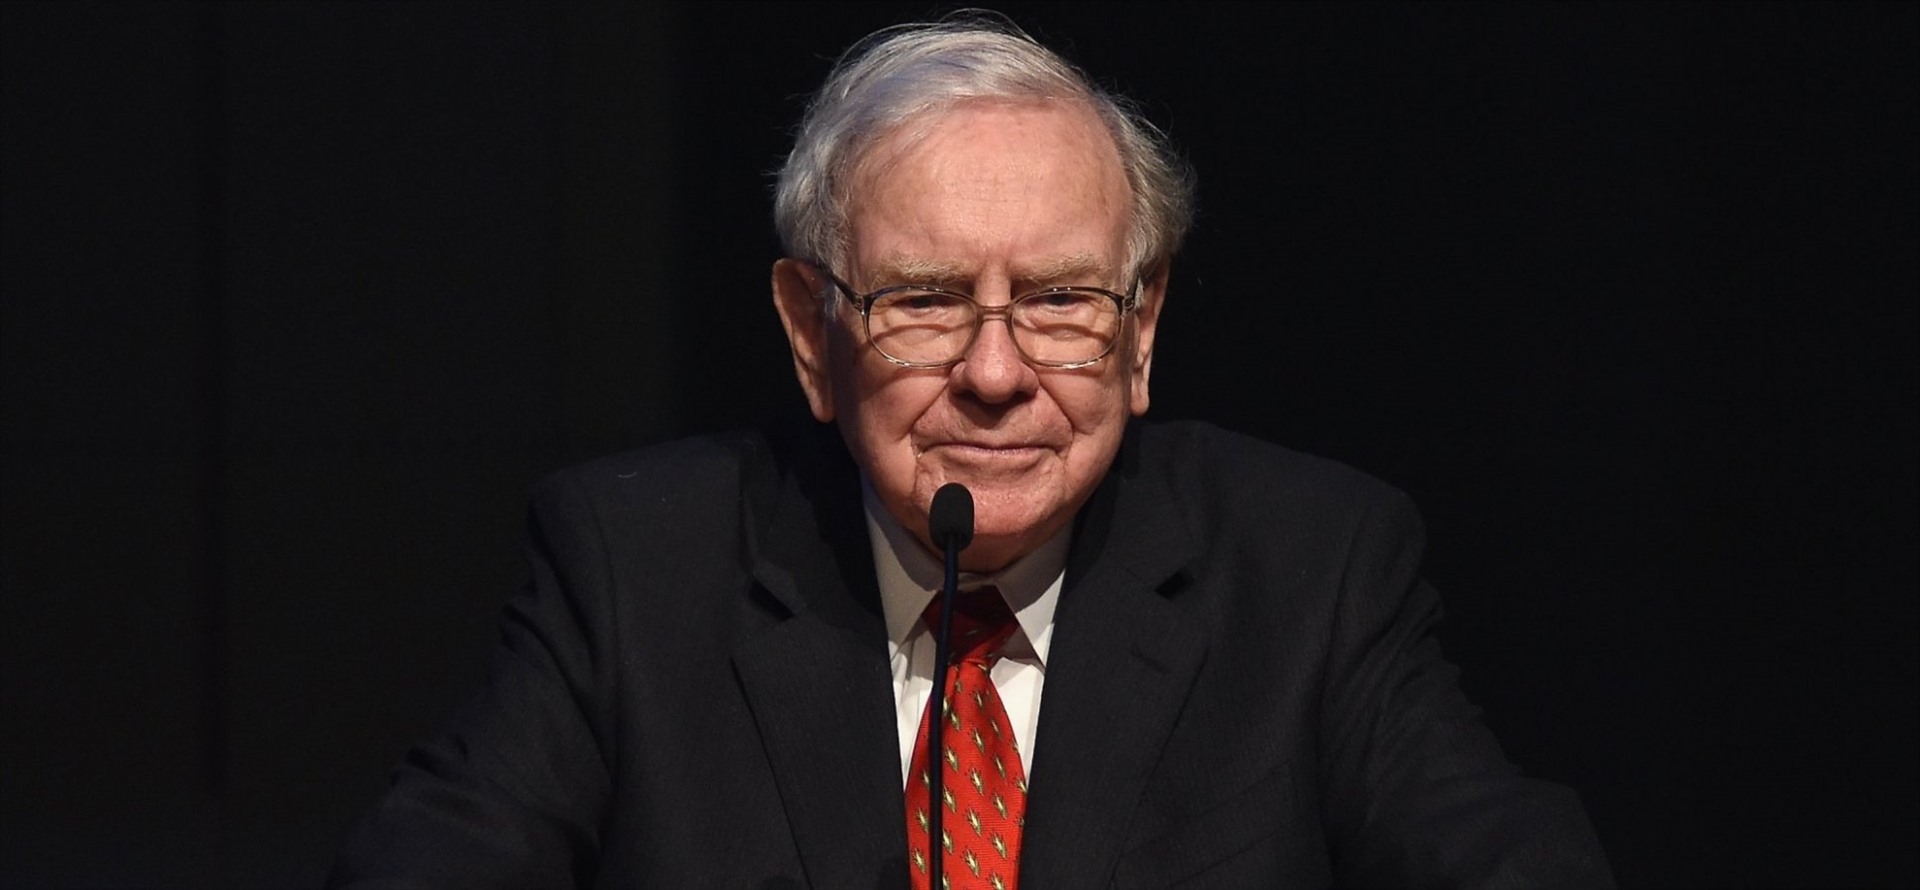 Warren Buffett đã mất 5 tỉ USD kể từ ngày 24.2 kéo tài sản của ông xuống mức 85,2 tỉ USD. “Huyền thoại đầu tư nói rằng sự hoảng loạn của các nhà đầu tư đã khiến ông phải thay đổi chiến lược của mình. Ảnh: GETTY